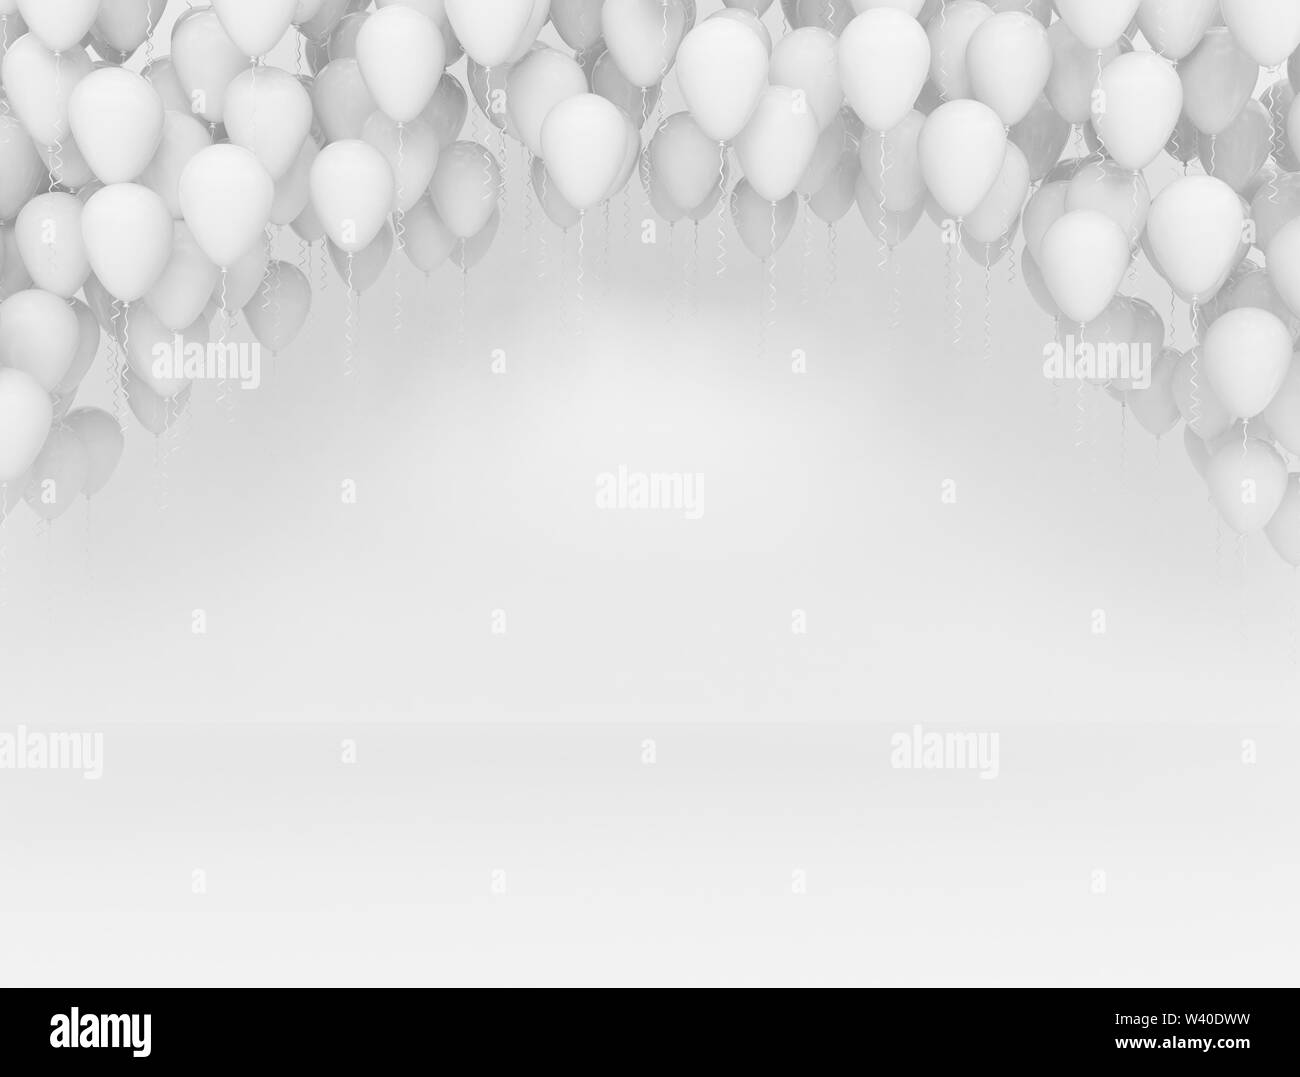 Weiße Ballons auf die weiße Wand, Feier Hintergrund Stockfoto